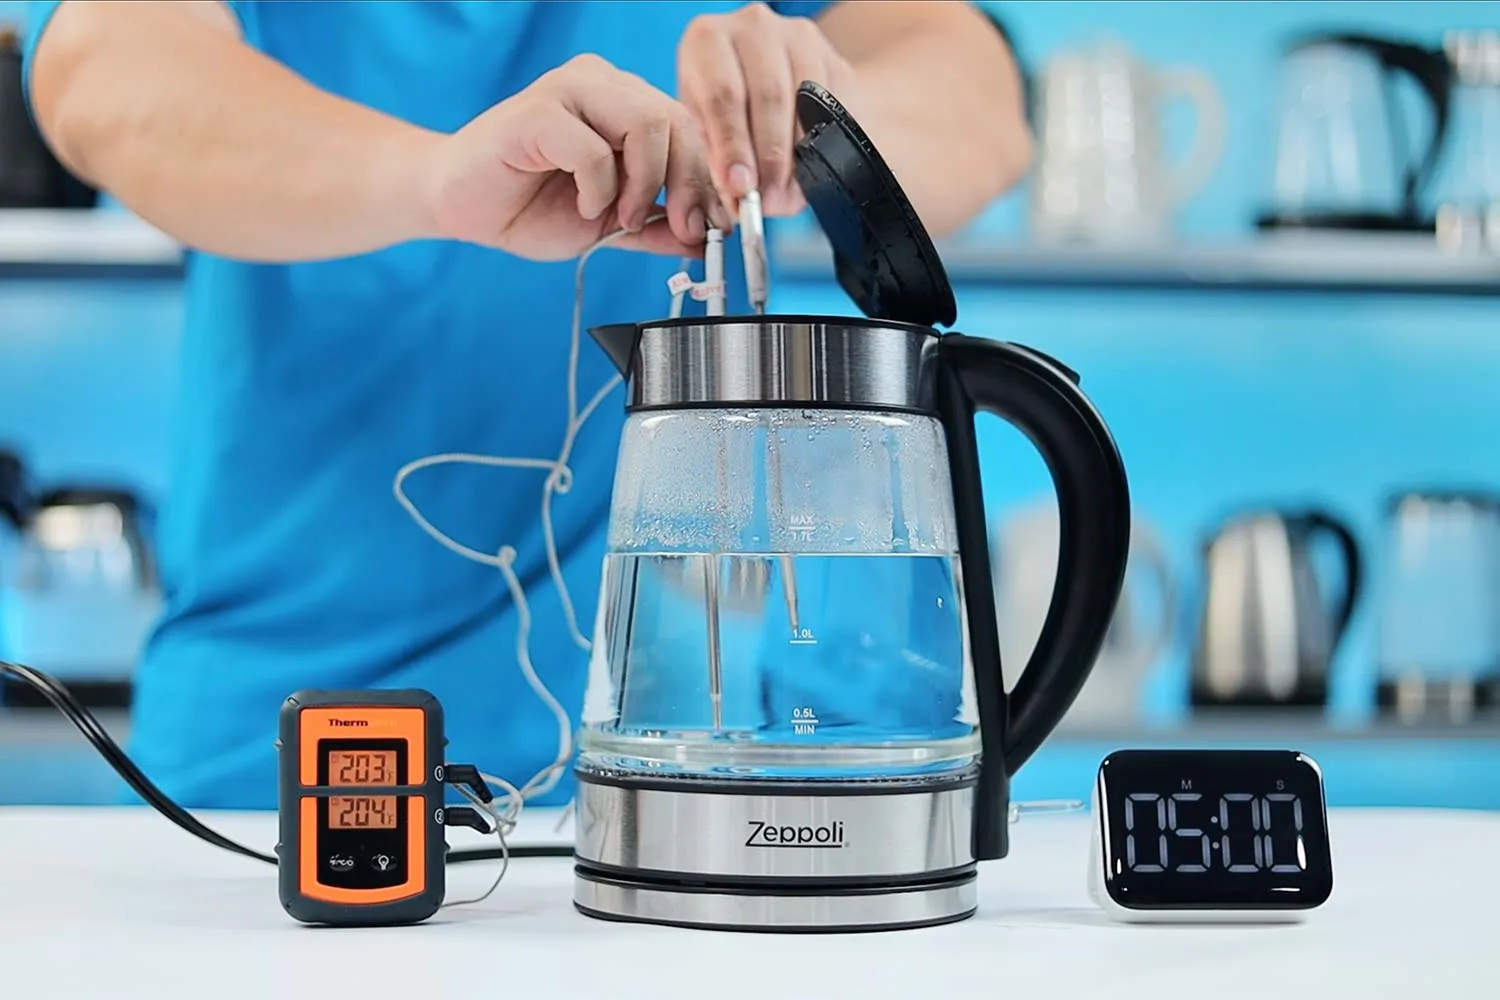 Zeppoli Electric Kettle - Glass Tea Kettle (1.7L)